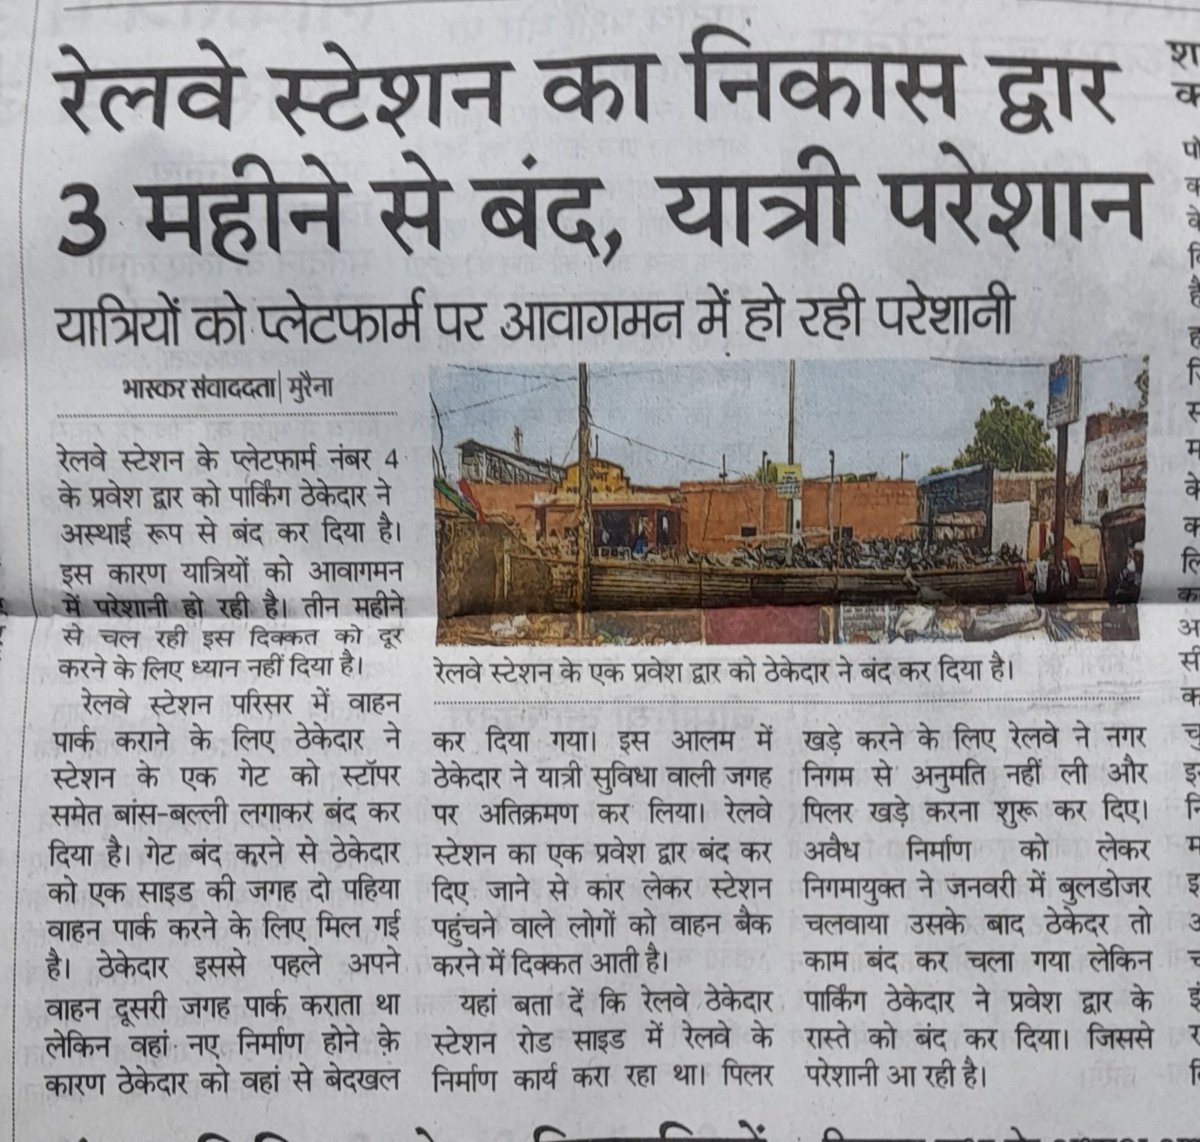 उत्तर मध्य रेलवे के मैन गेट no 1 बन्द होने से यात्री हो रहे परेशान कृपया निवेदन है कि मुख्य निकास द्वार के गेट no १ को खोला जाए @AshwiniVaishnaw @RailMinIndia @RailwaySeva @CPRONCR @GMNCR1 @DrmJhansi @DainikBhaskar @PTI_News @ANI @MPTakOfficial